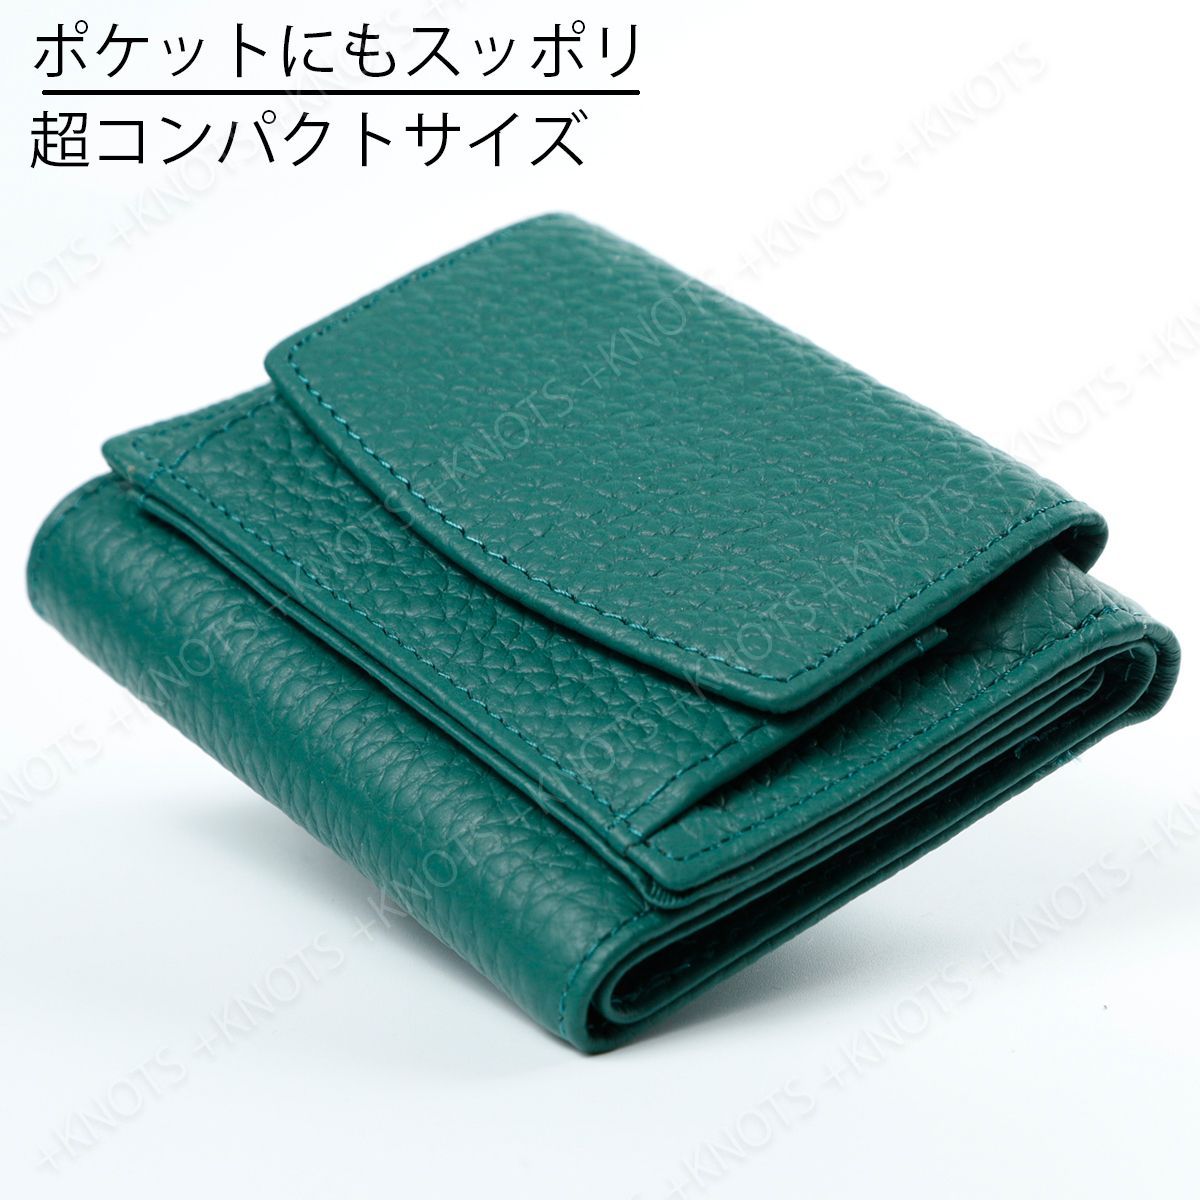 本革ミニ財布 グリーン緑 三つ折り財布 小さい財布 コンパクト財布